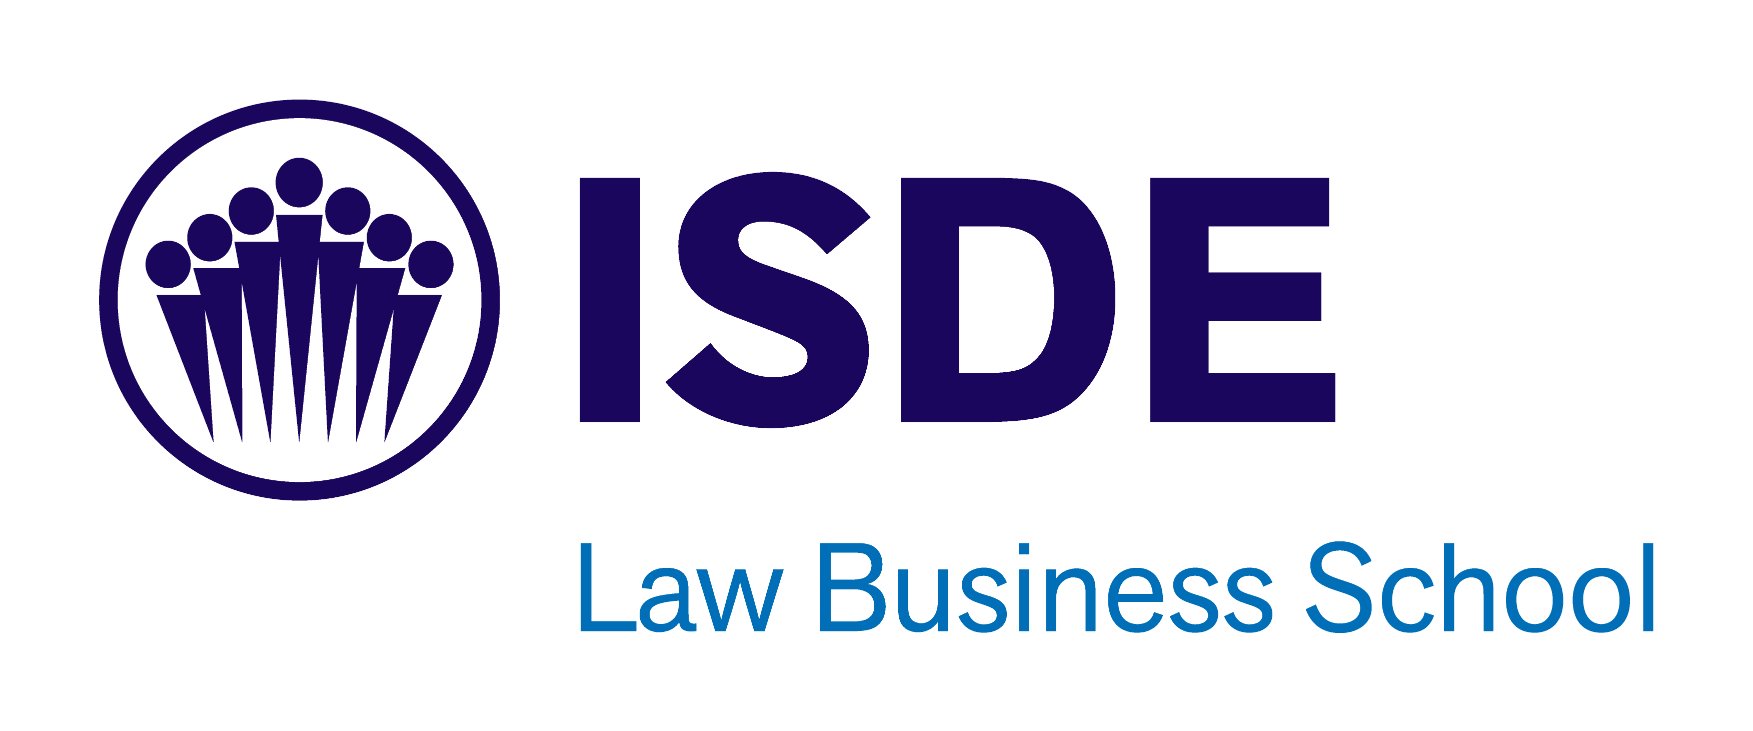 Máster en Derecho Internacional, Diplomático, Consular y Comercio Exterior - ISDE Law Business School